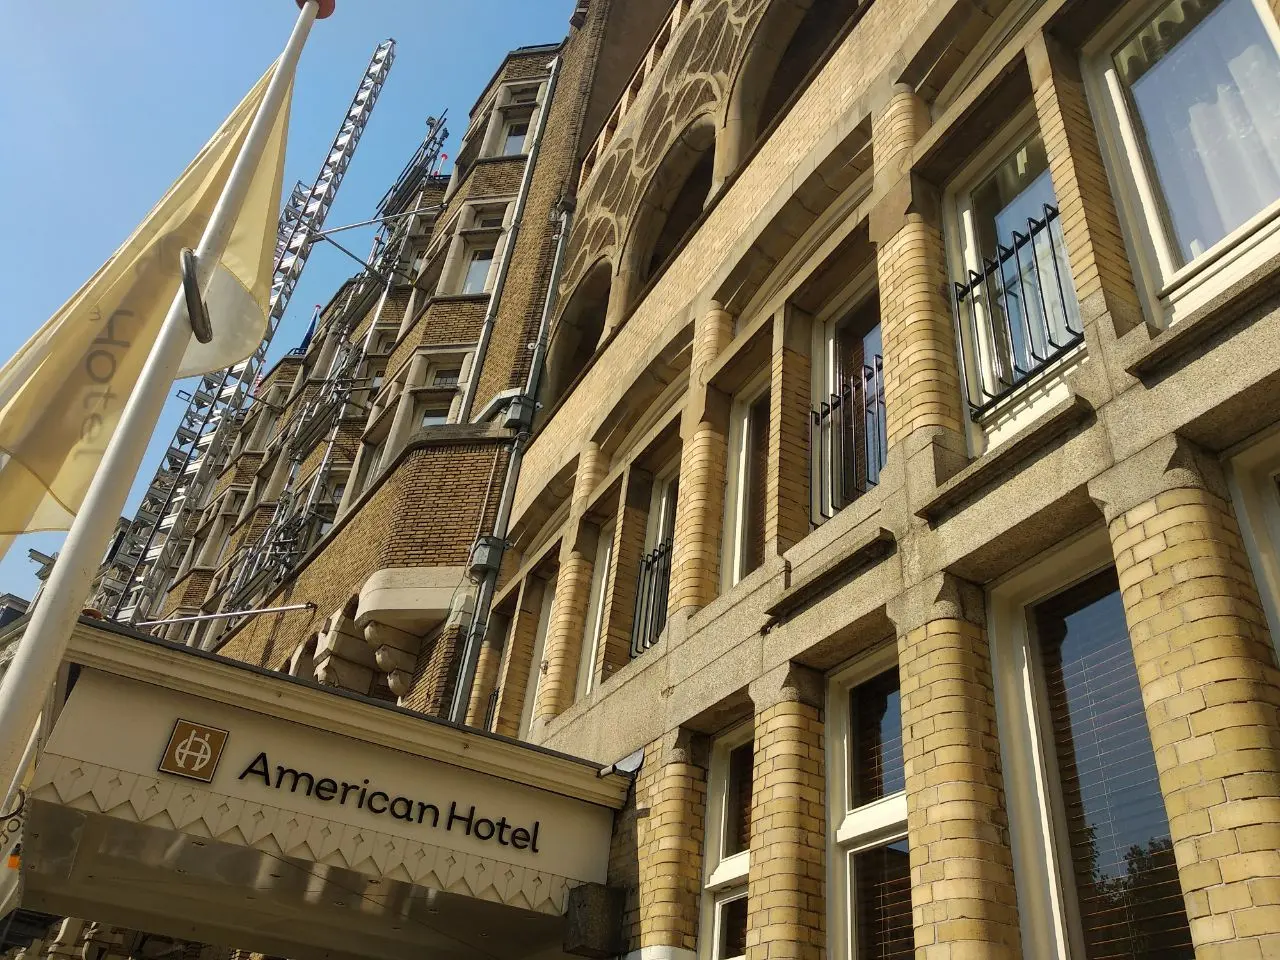 Lokasi bulan madu Mata Hari hingga markas Nazi, Hotel American Amsterdam yang dibangun pada 1880  punya sejarah yang panjang (/Elin Yunita Kristanti)